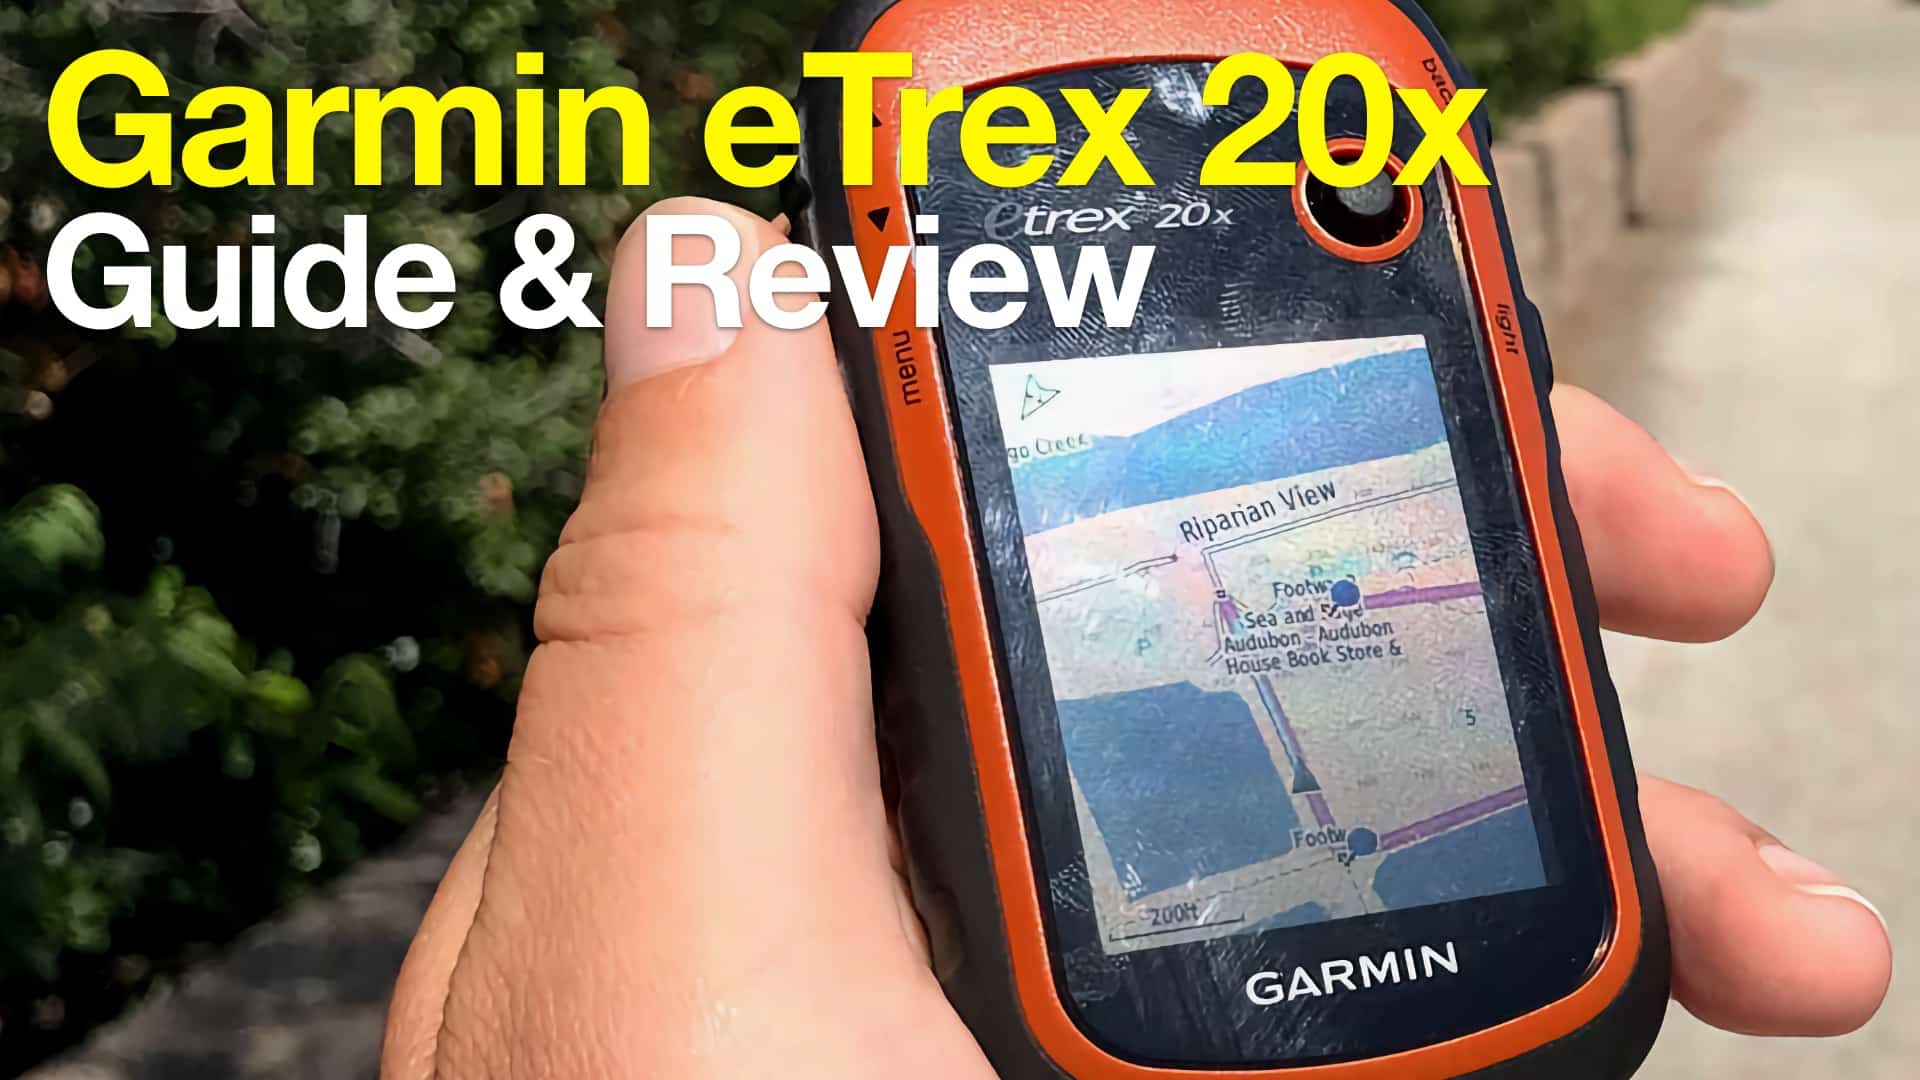 Garmin eTrex 20x Hiking GPS Review - HikingGuy.com